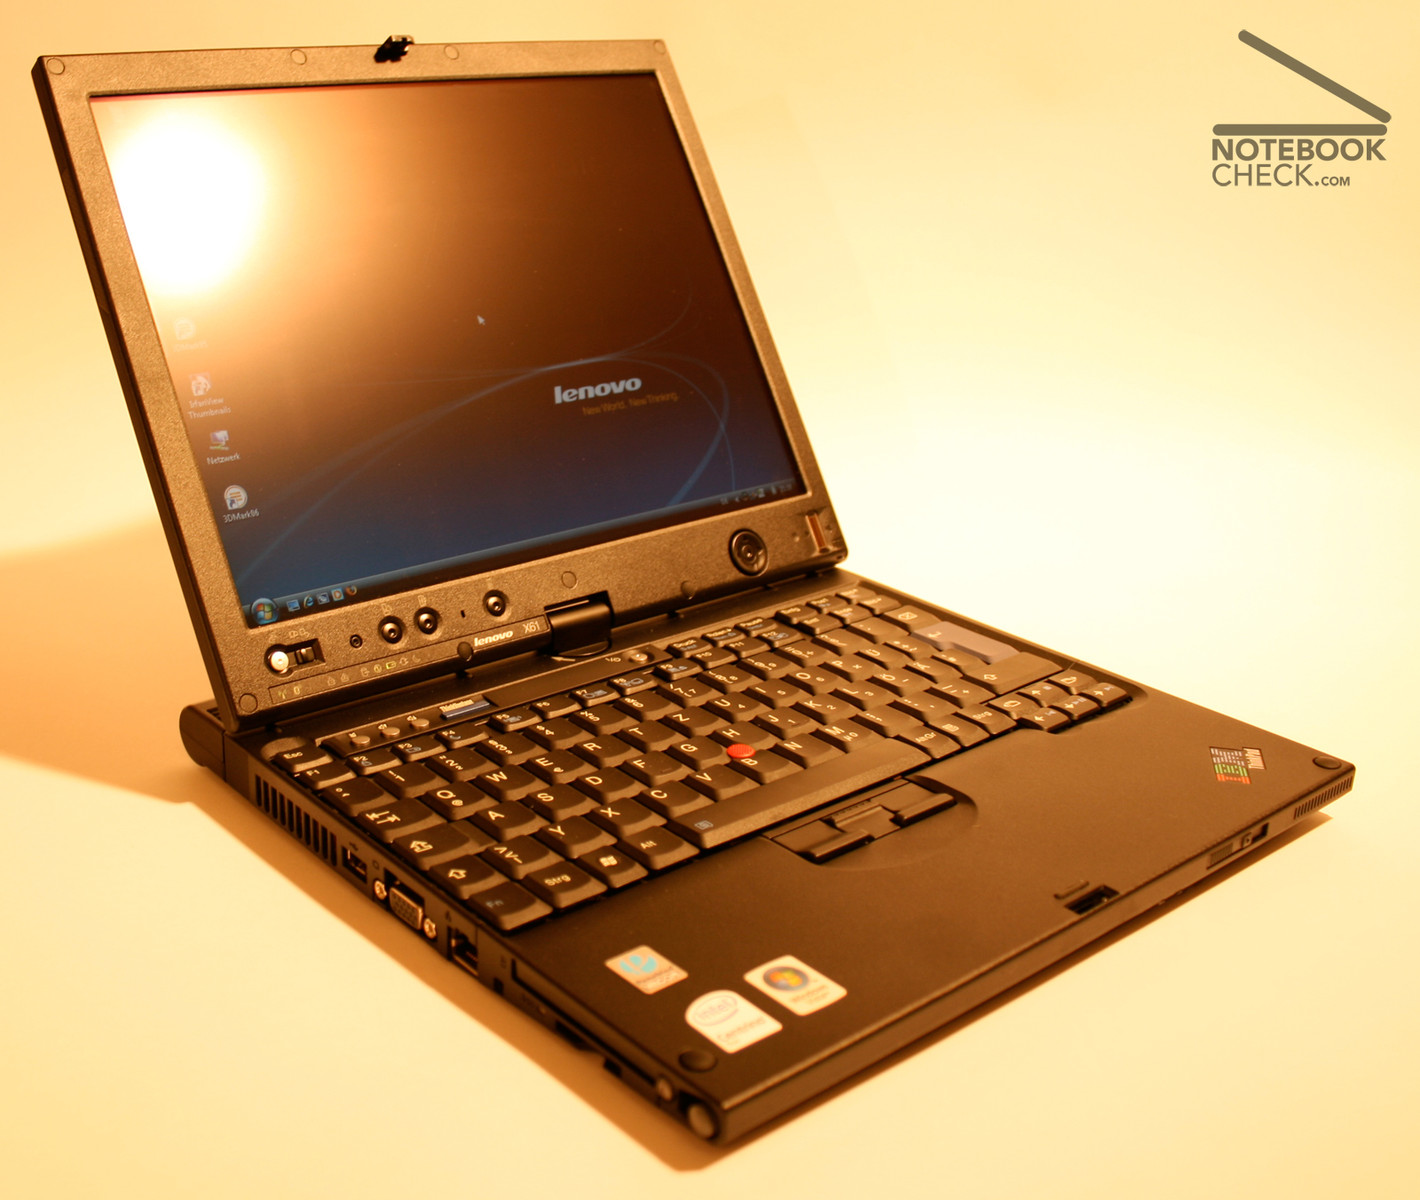 Lenovo Thinkpad X61s